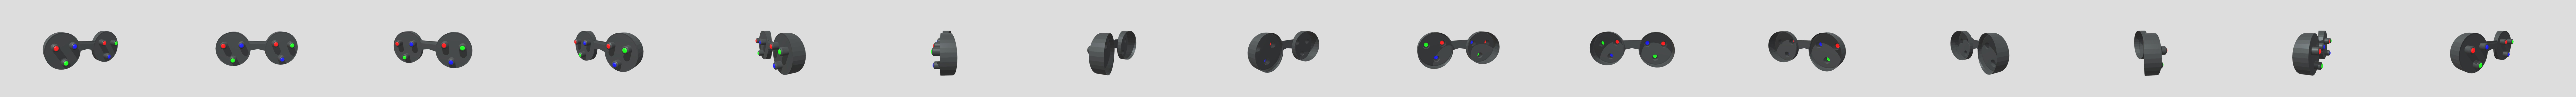 Cyberpunk Glasses - Download Free 3D model by nikita_afanasiev  (@nikita_afanasiev) [dcea704]